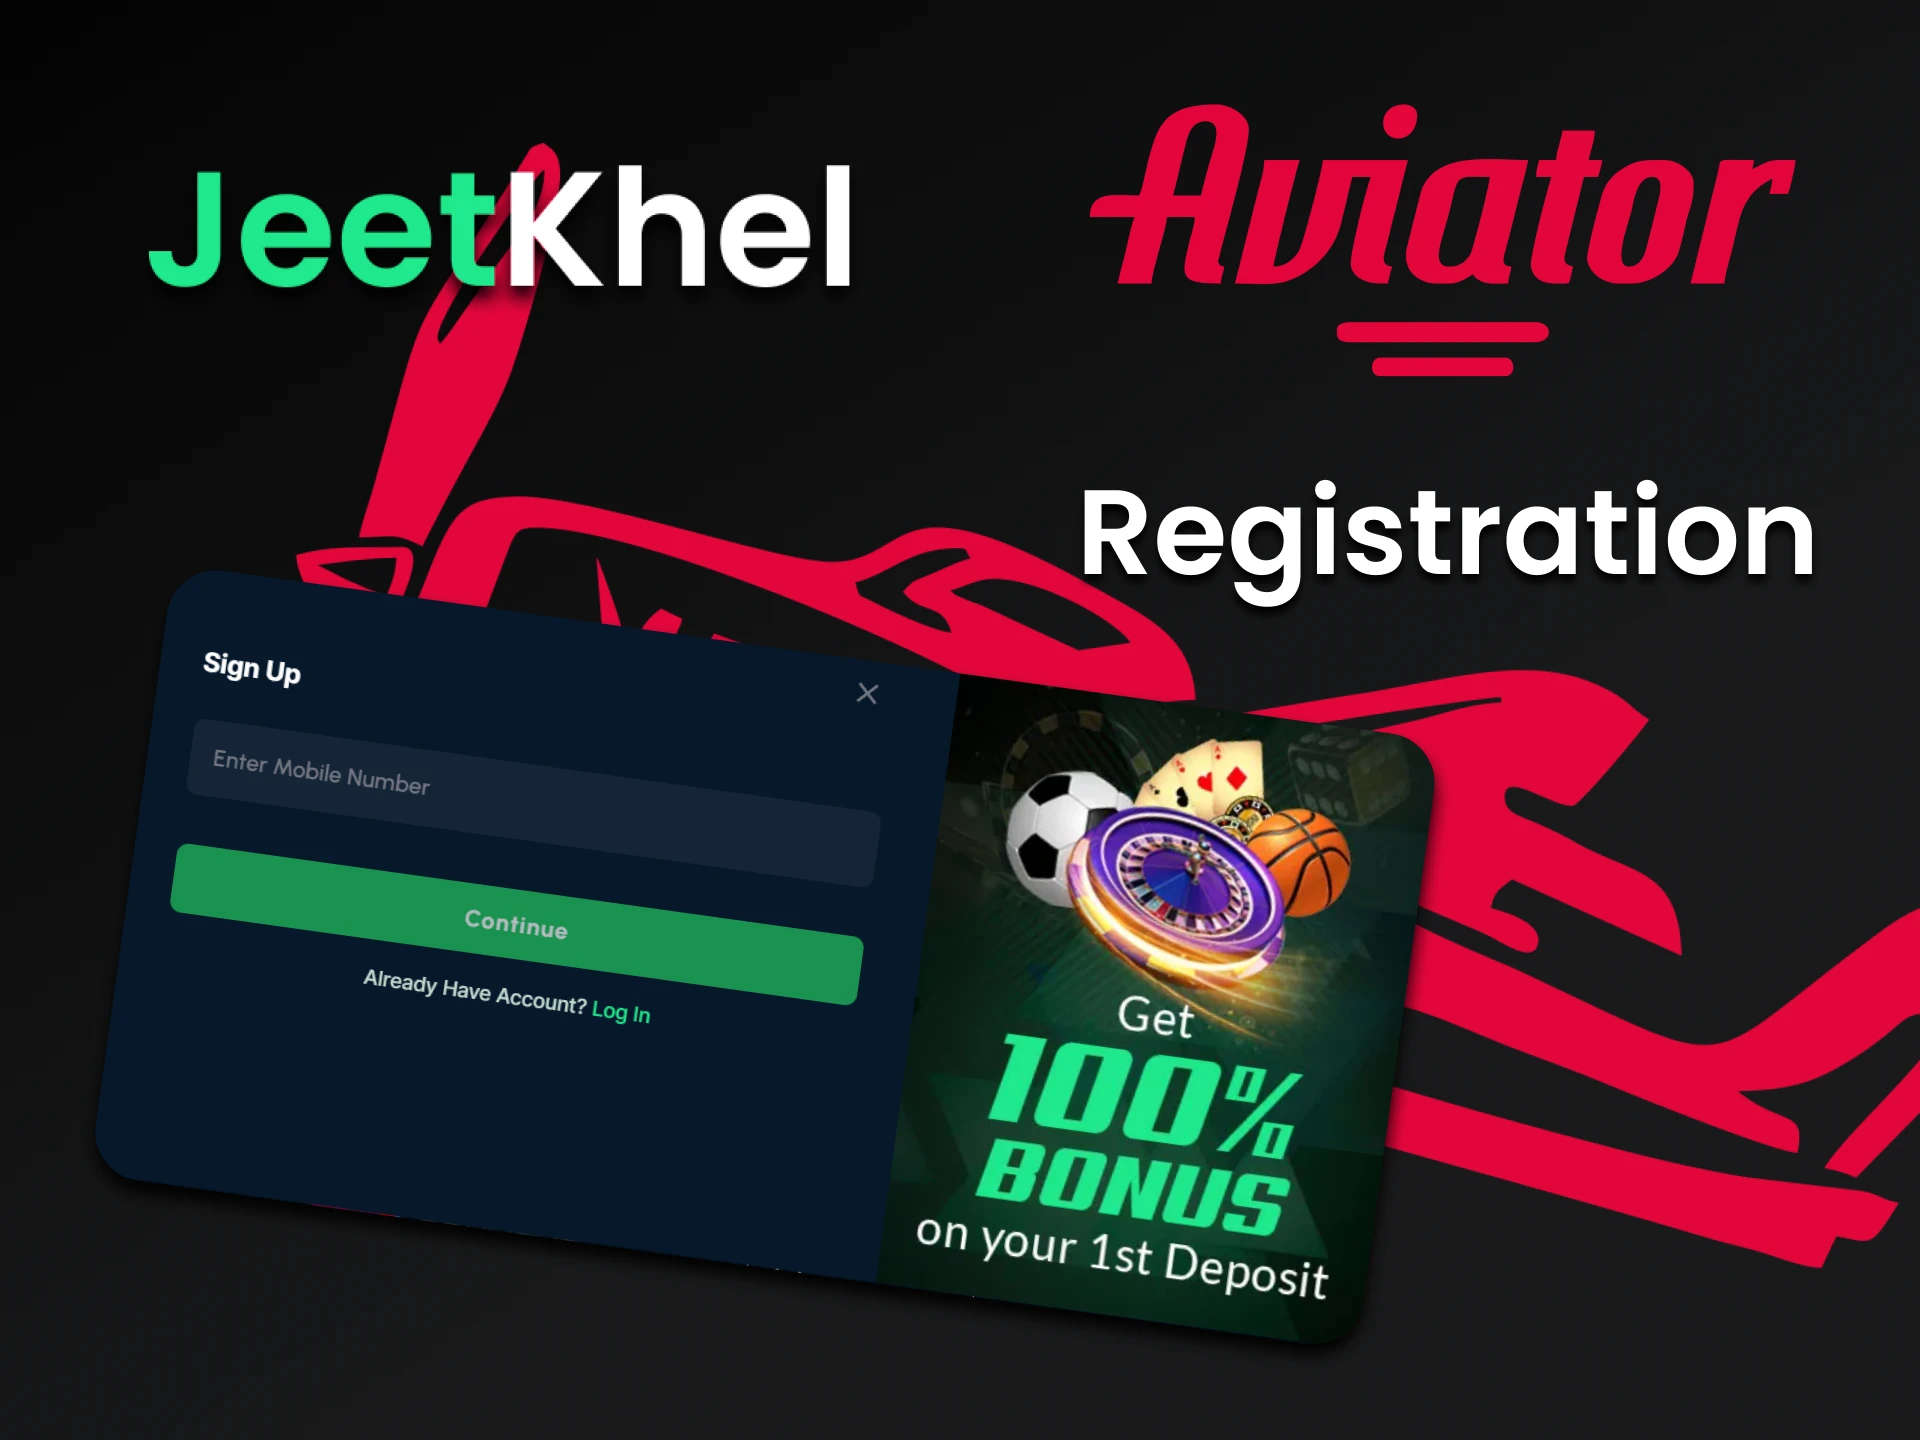 Register on JeetKhel and start playing Aviator.